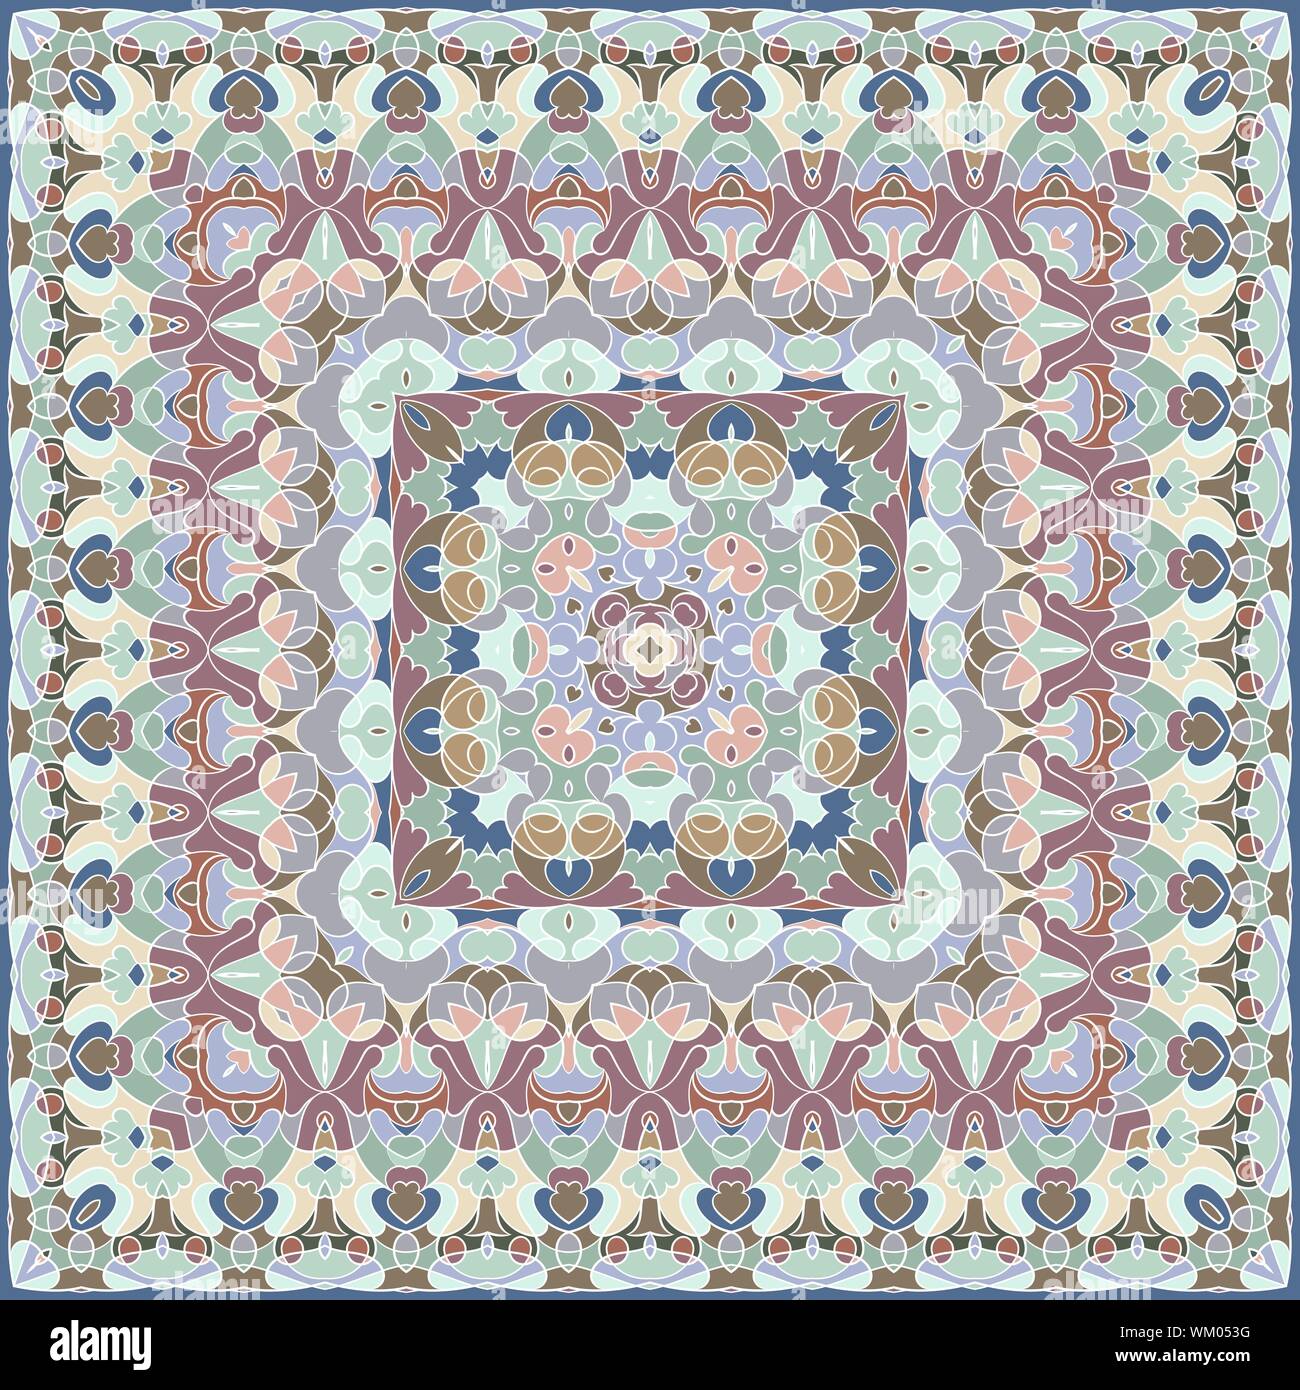 Quadratischen Muster für den seidenen Schal, Schal, Druckerei, Teppich.  Arabisch im klassischen Stil. Vector Illustration Stock-Vektorgrafik - Alamy